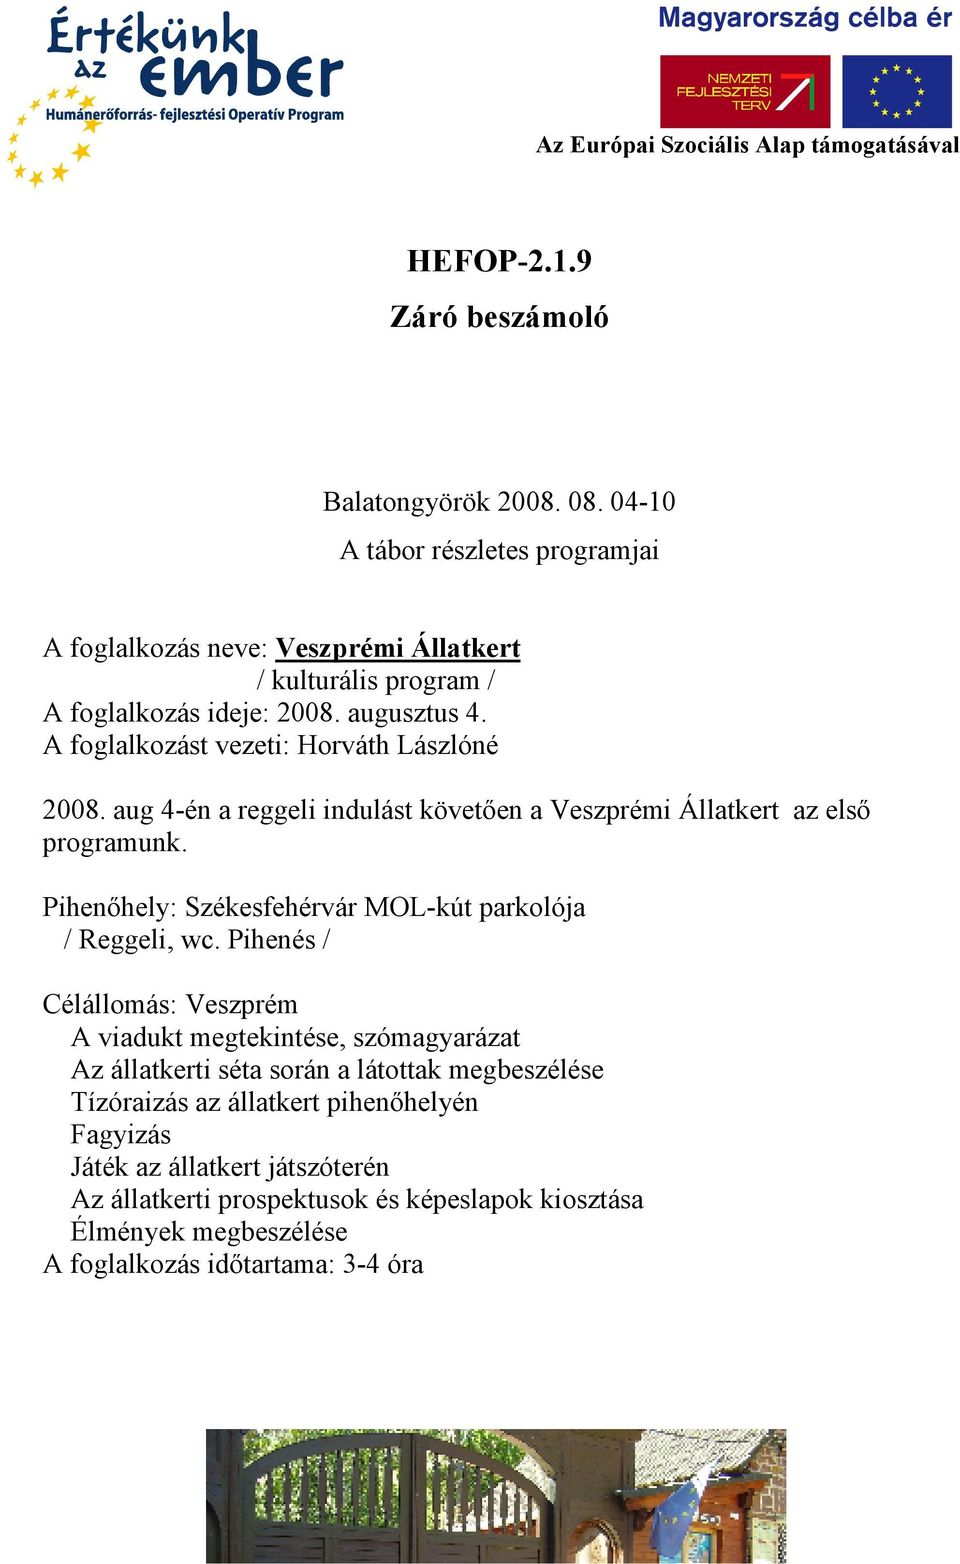 A foglalkozást vezeti: Horváth Lászlóné 2008. aug 4-én a reggeli indulást követıen a Veszprémi Állatkert az elsı programunk.